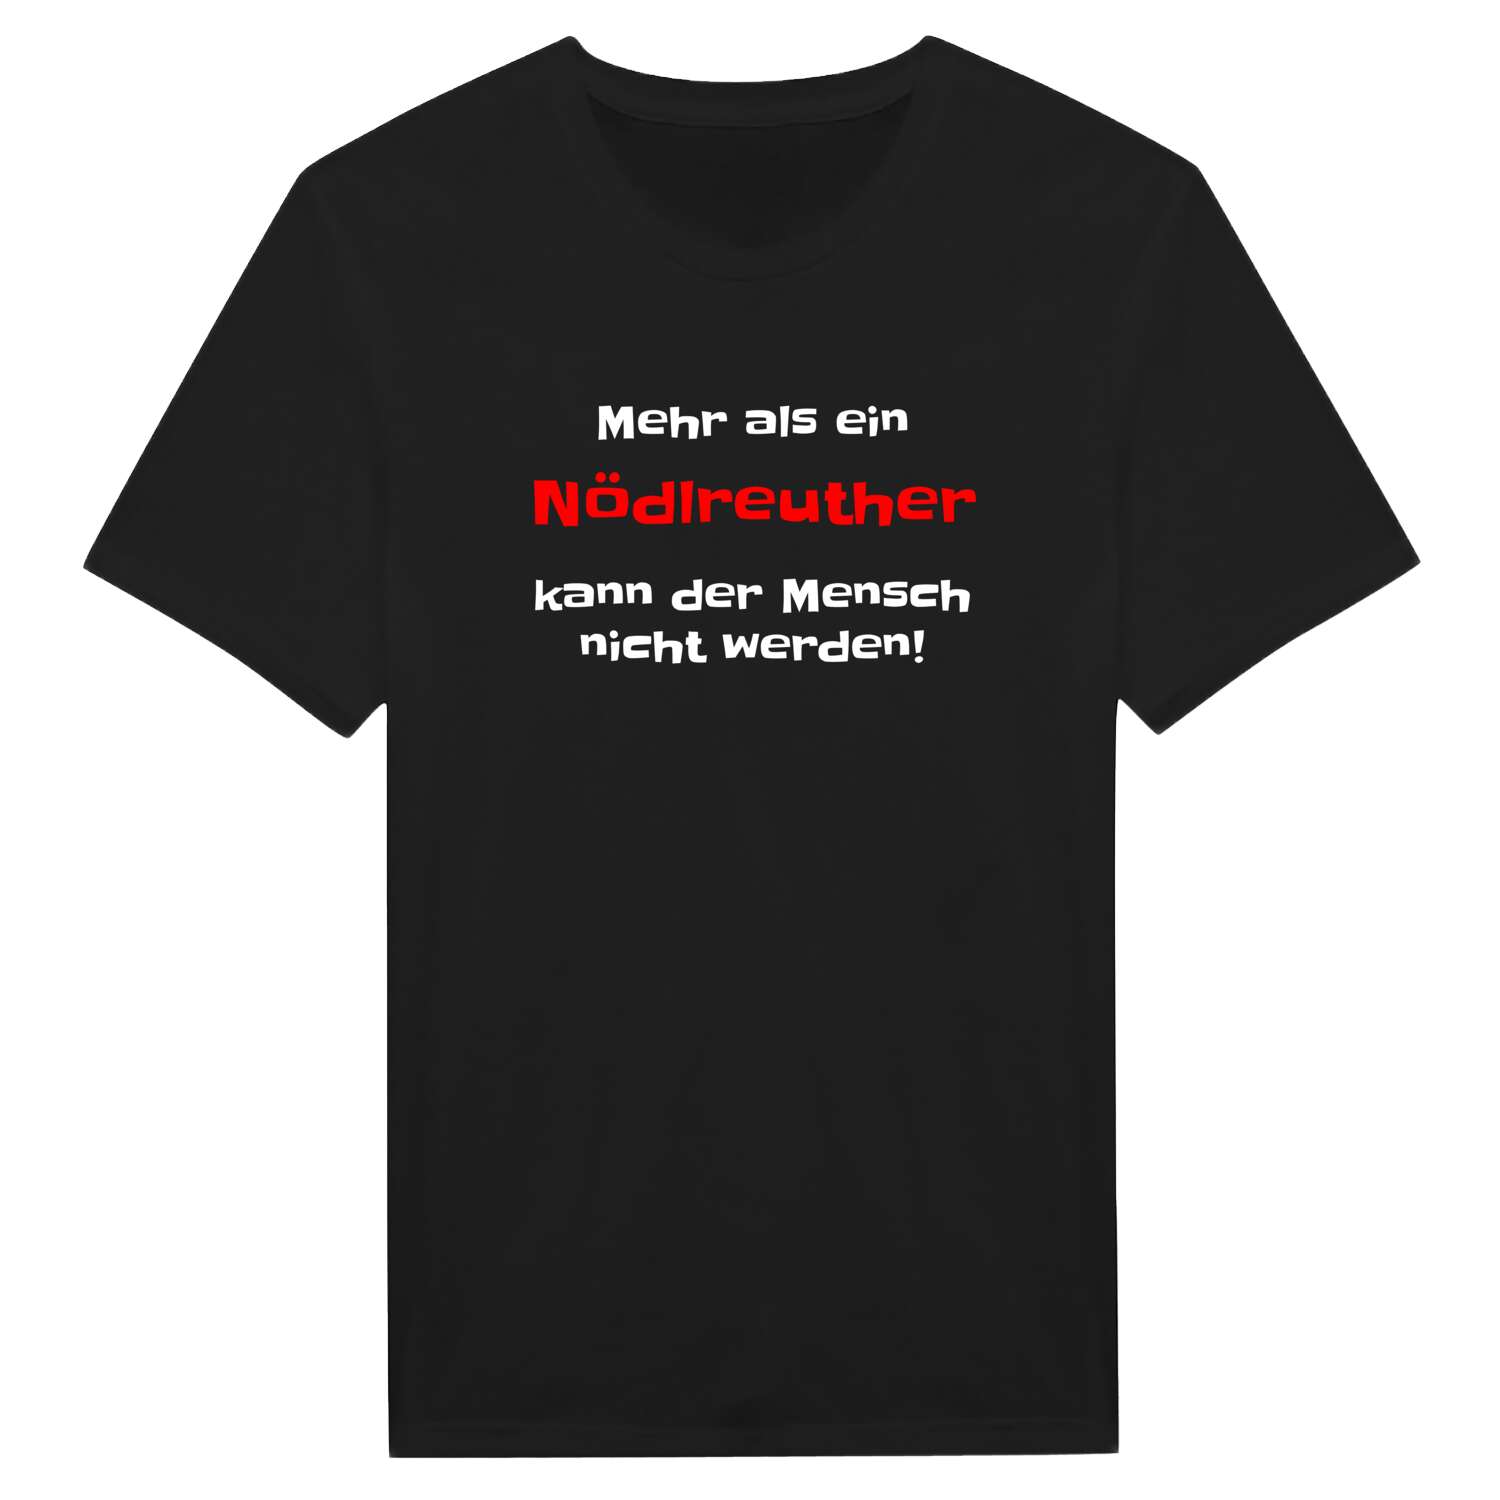 Nödlreuth T-Shirt »Mehr als ein«